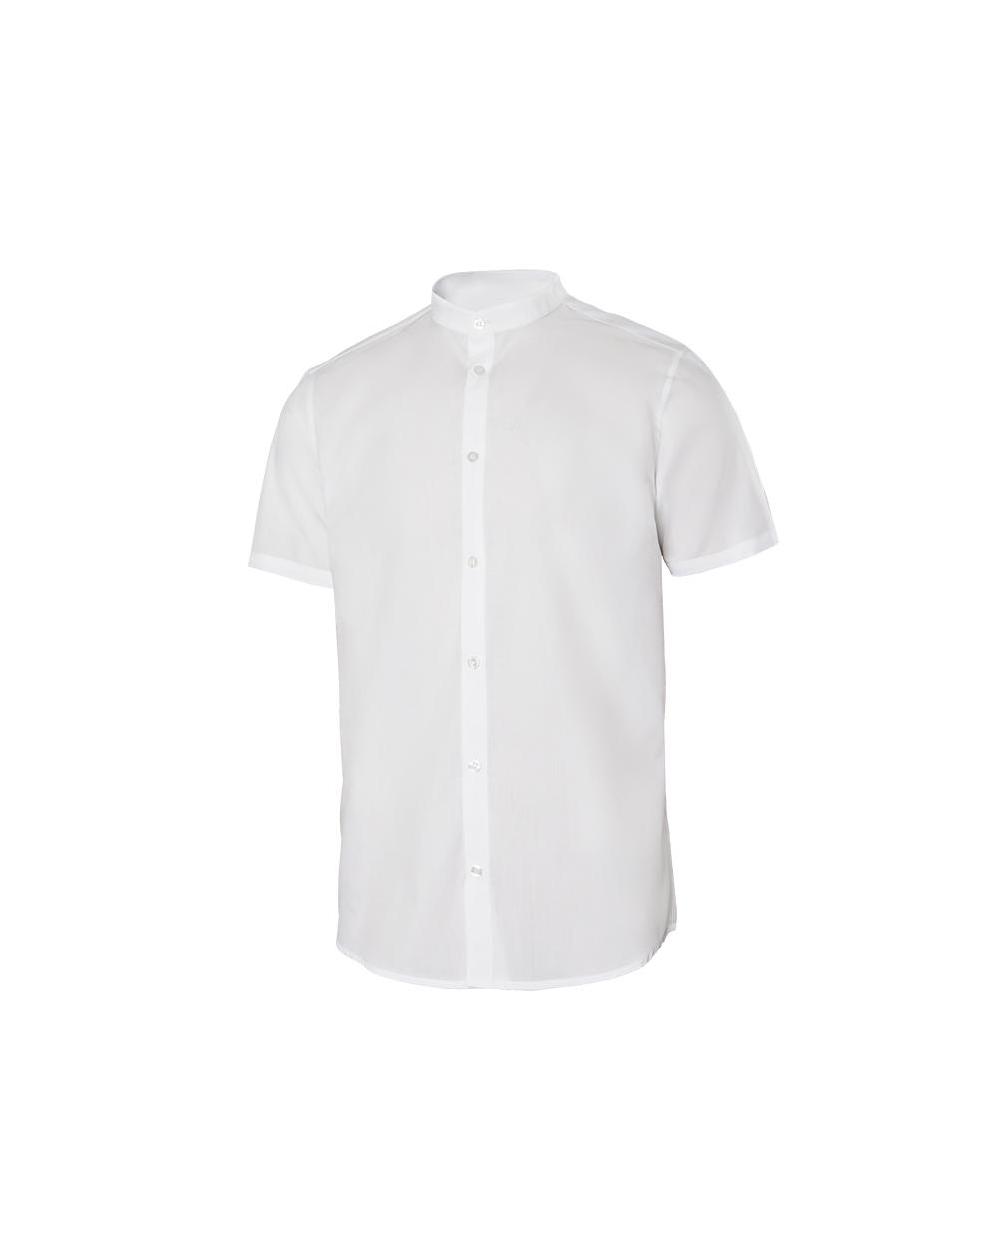 Comprar Camisa cuello tirilla stretch manga corta serie 405012s online barato Blanco